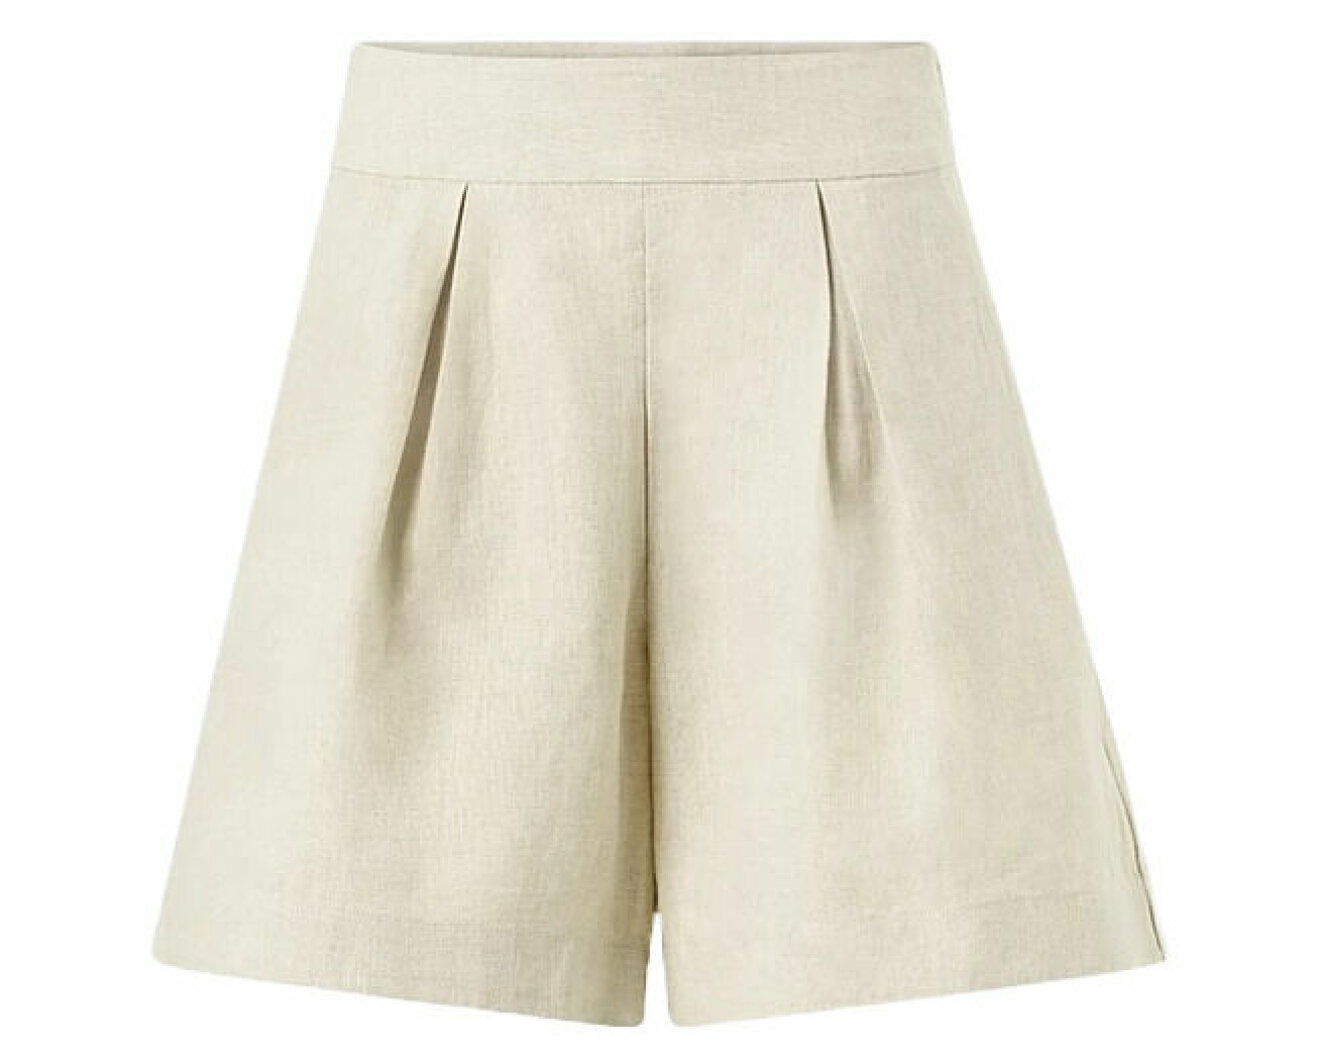 snygga shorts i linne från stylein